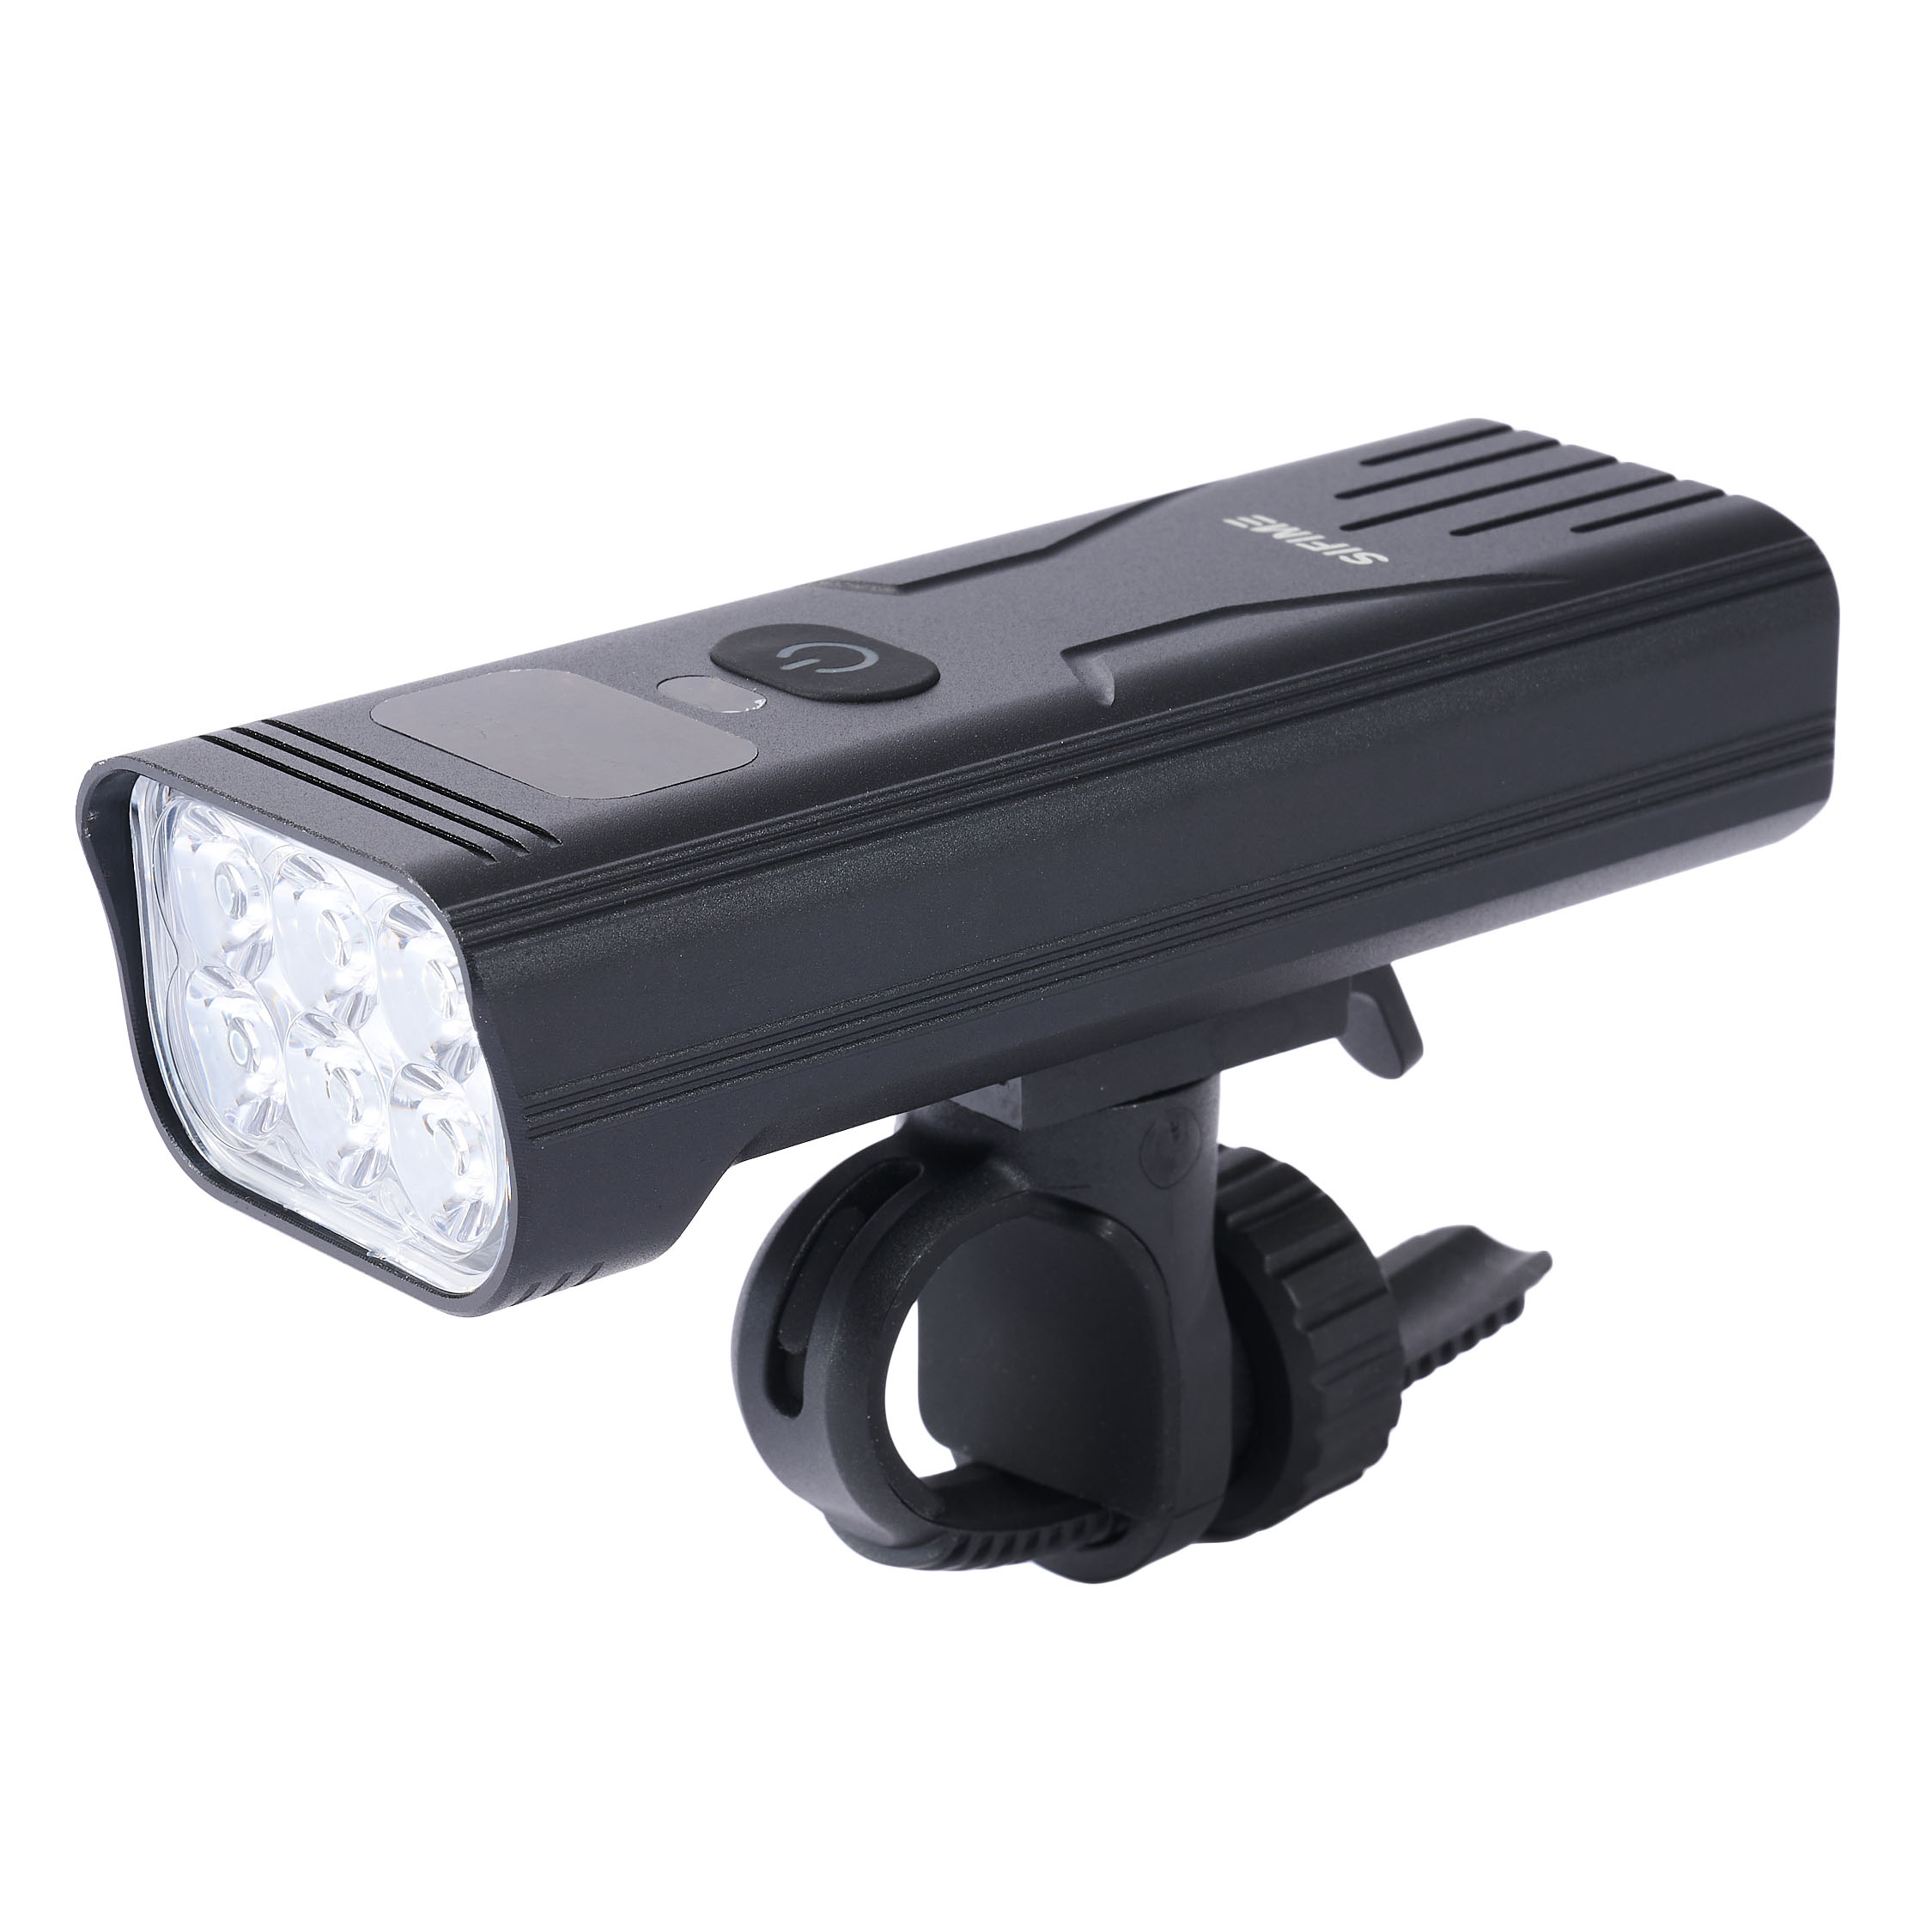 自転車LEDライト 自転車 ライト ソーラー LED 自転車ライト USB充電式 ソーラー充電 4モード搭載 ブラック (管理S) 送料無料 